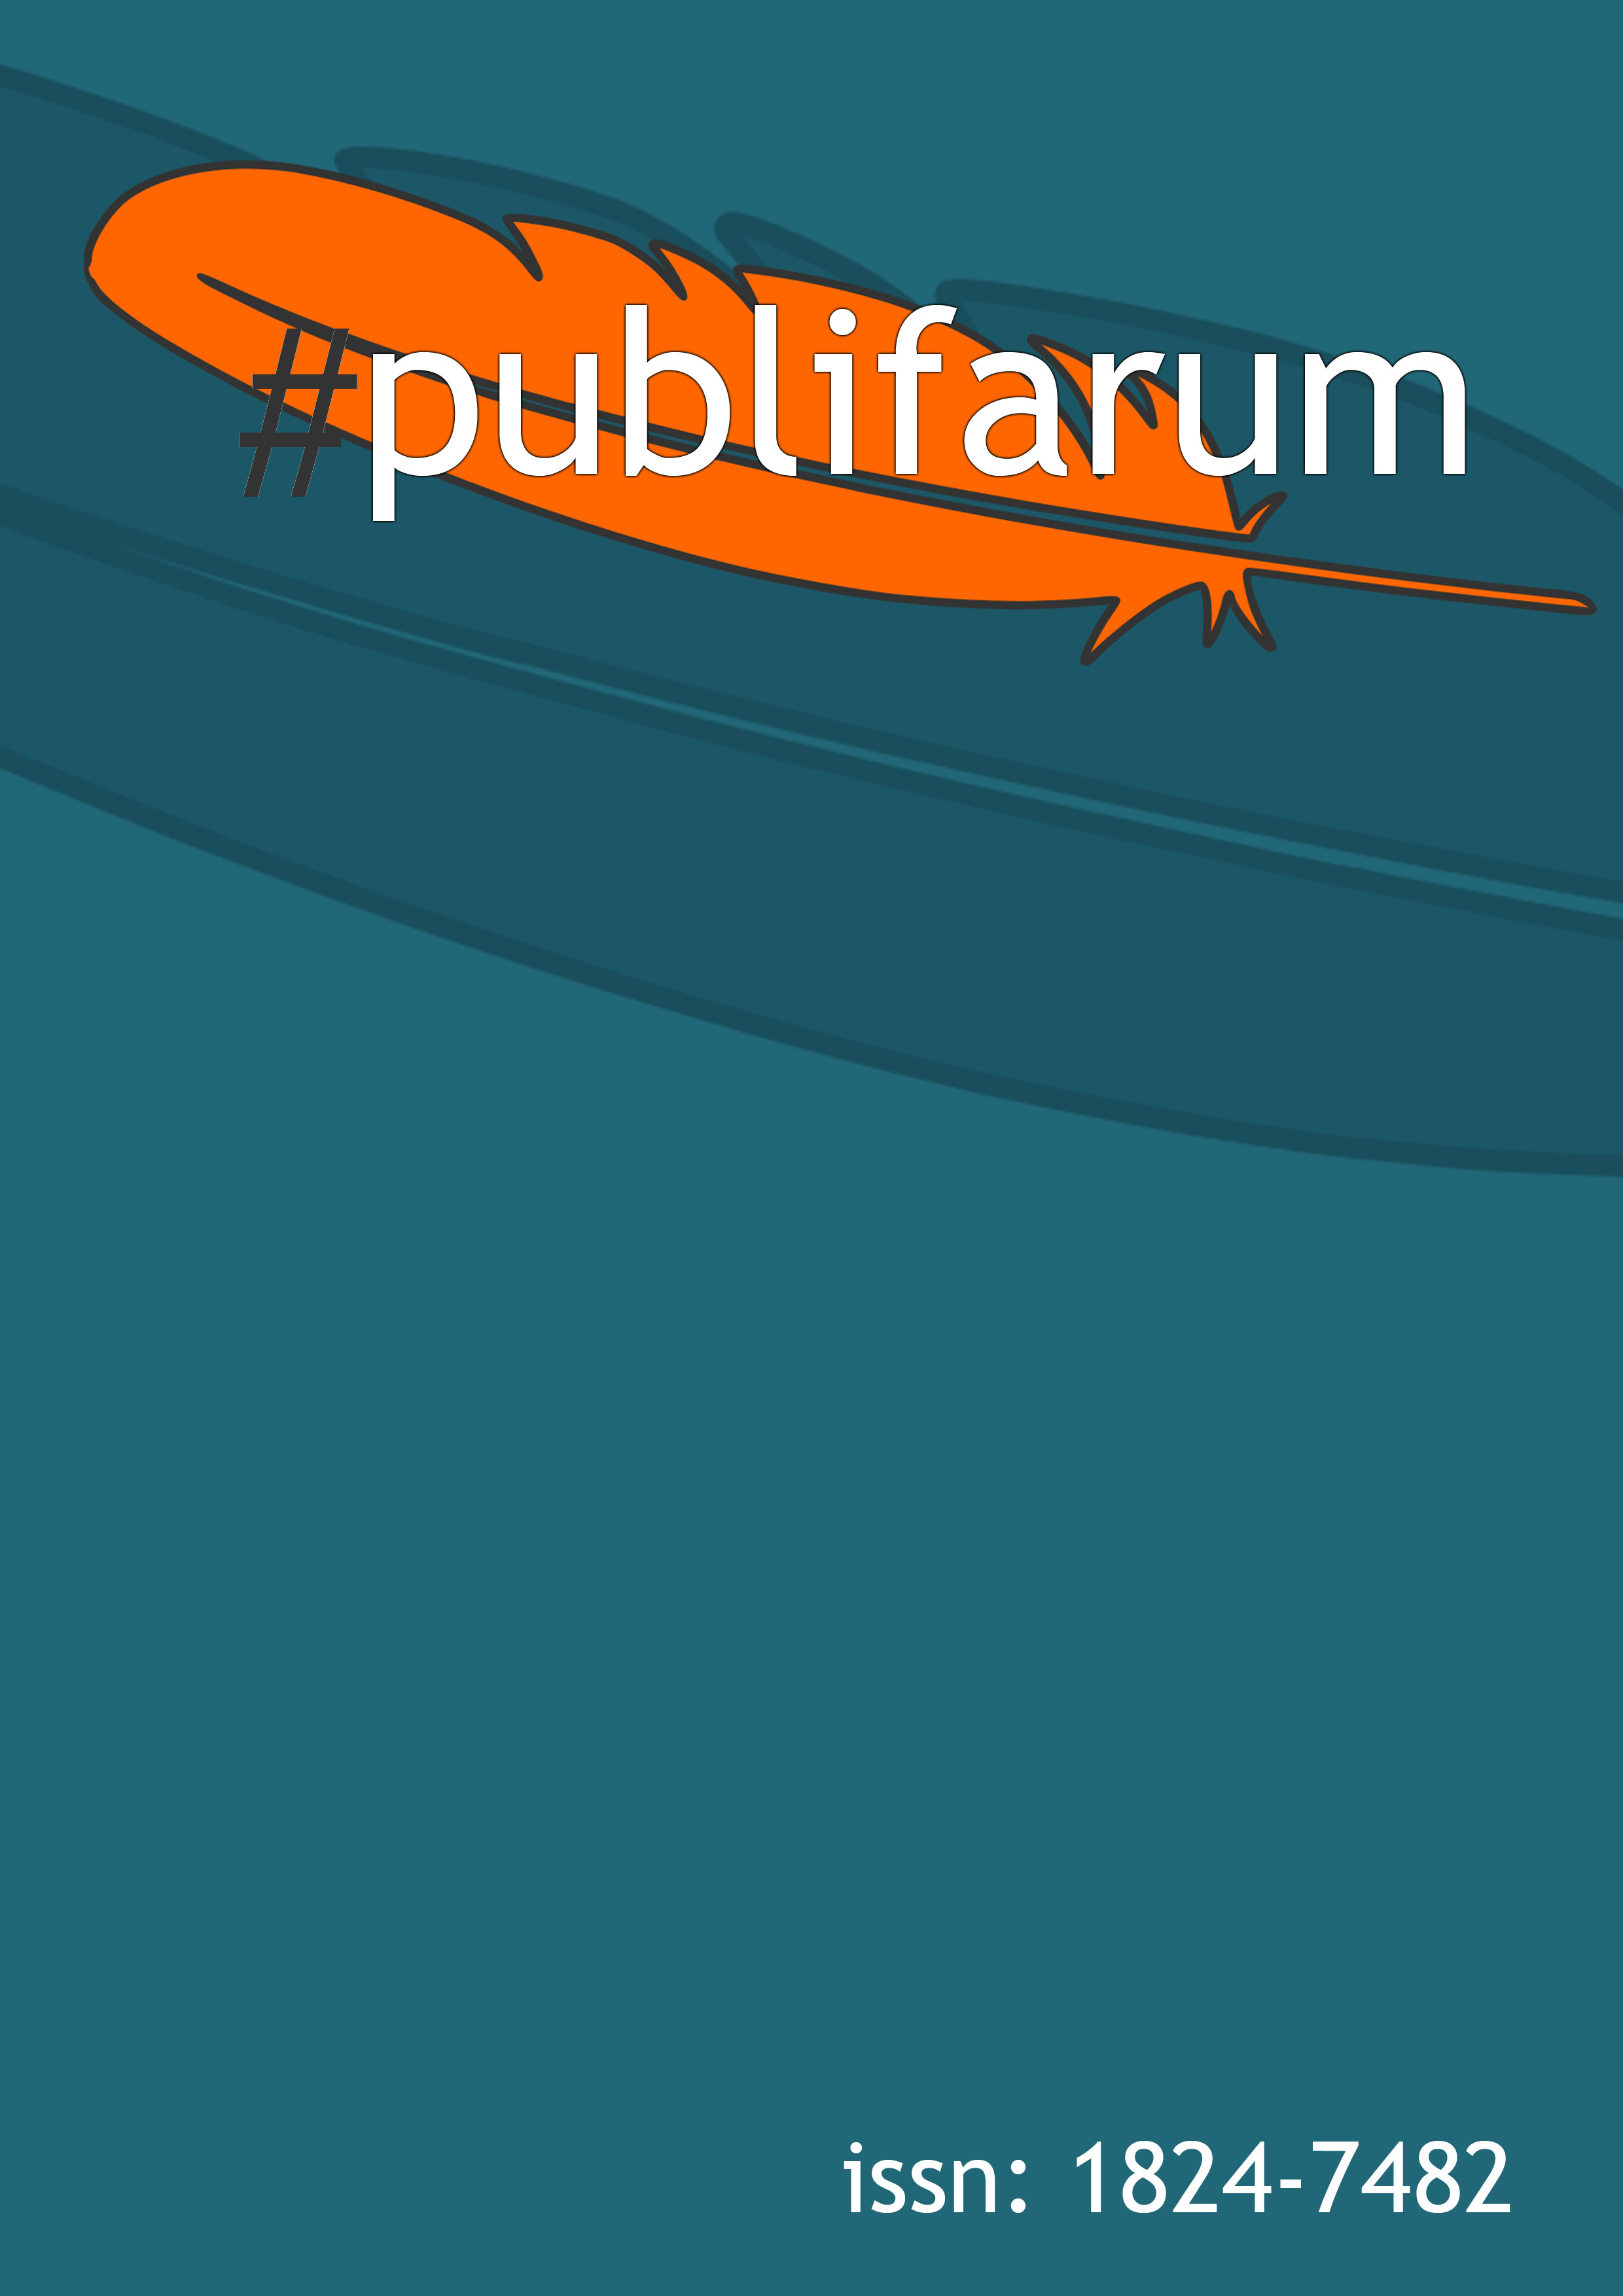 couverture du magazine publifarum